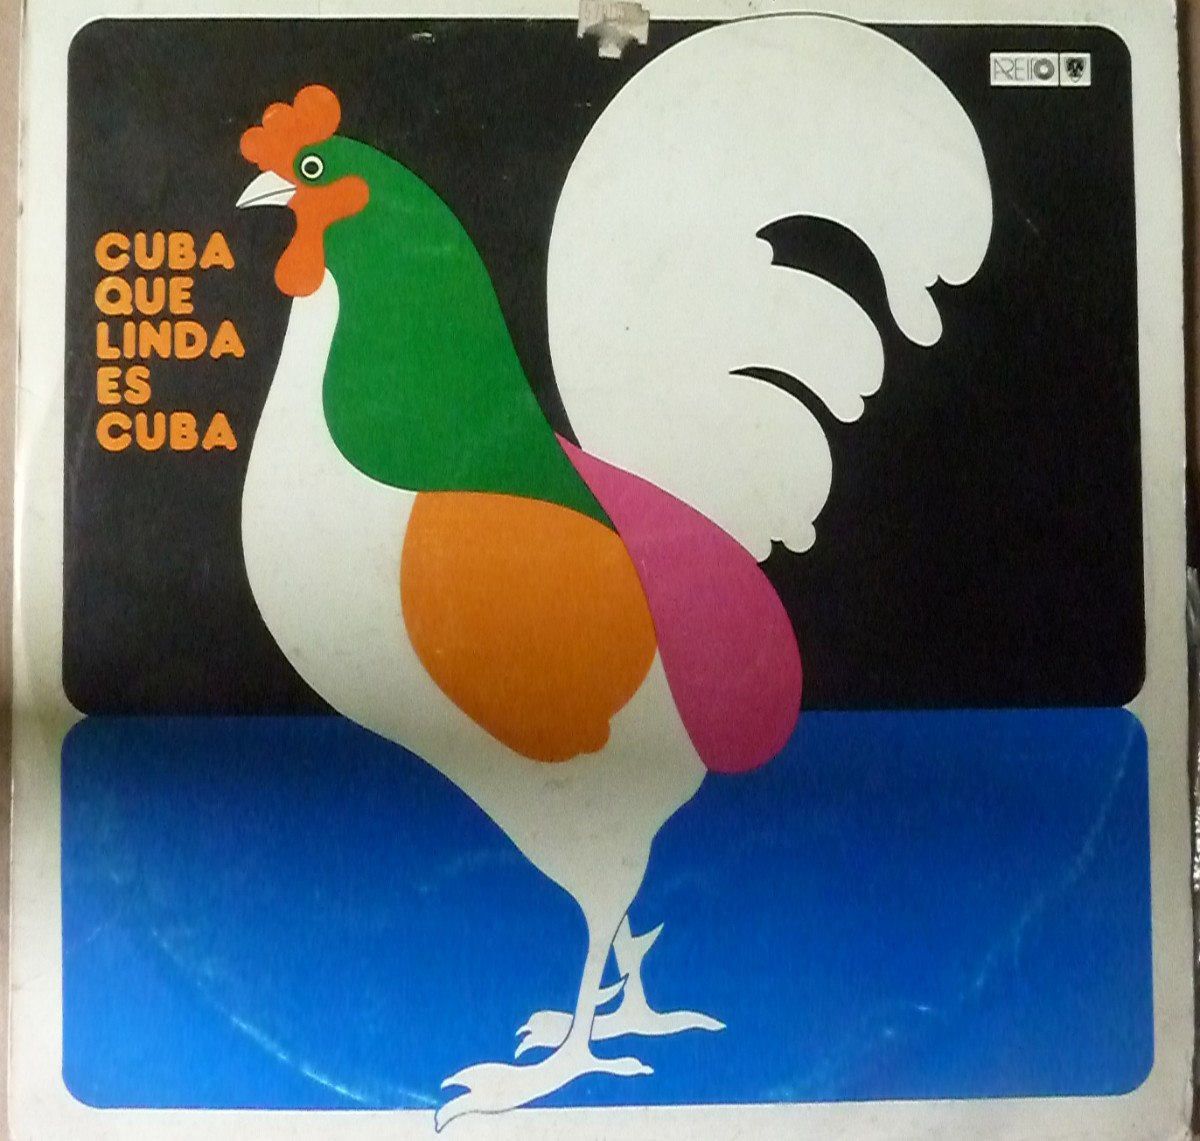 cuba-que-linda-es-cuba-musica-cubana-7197-MPE5162898384_102013-F